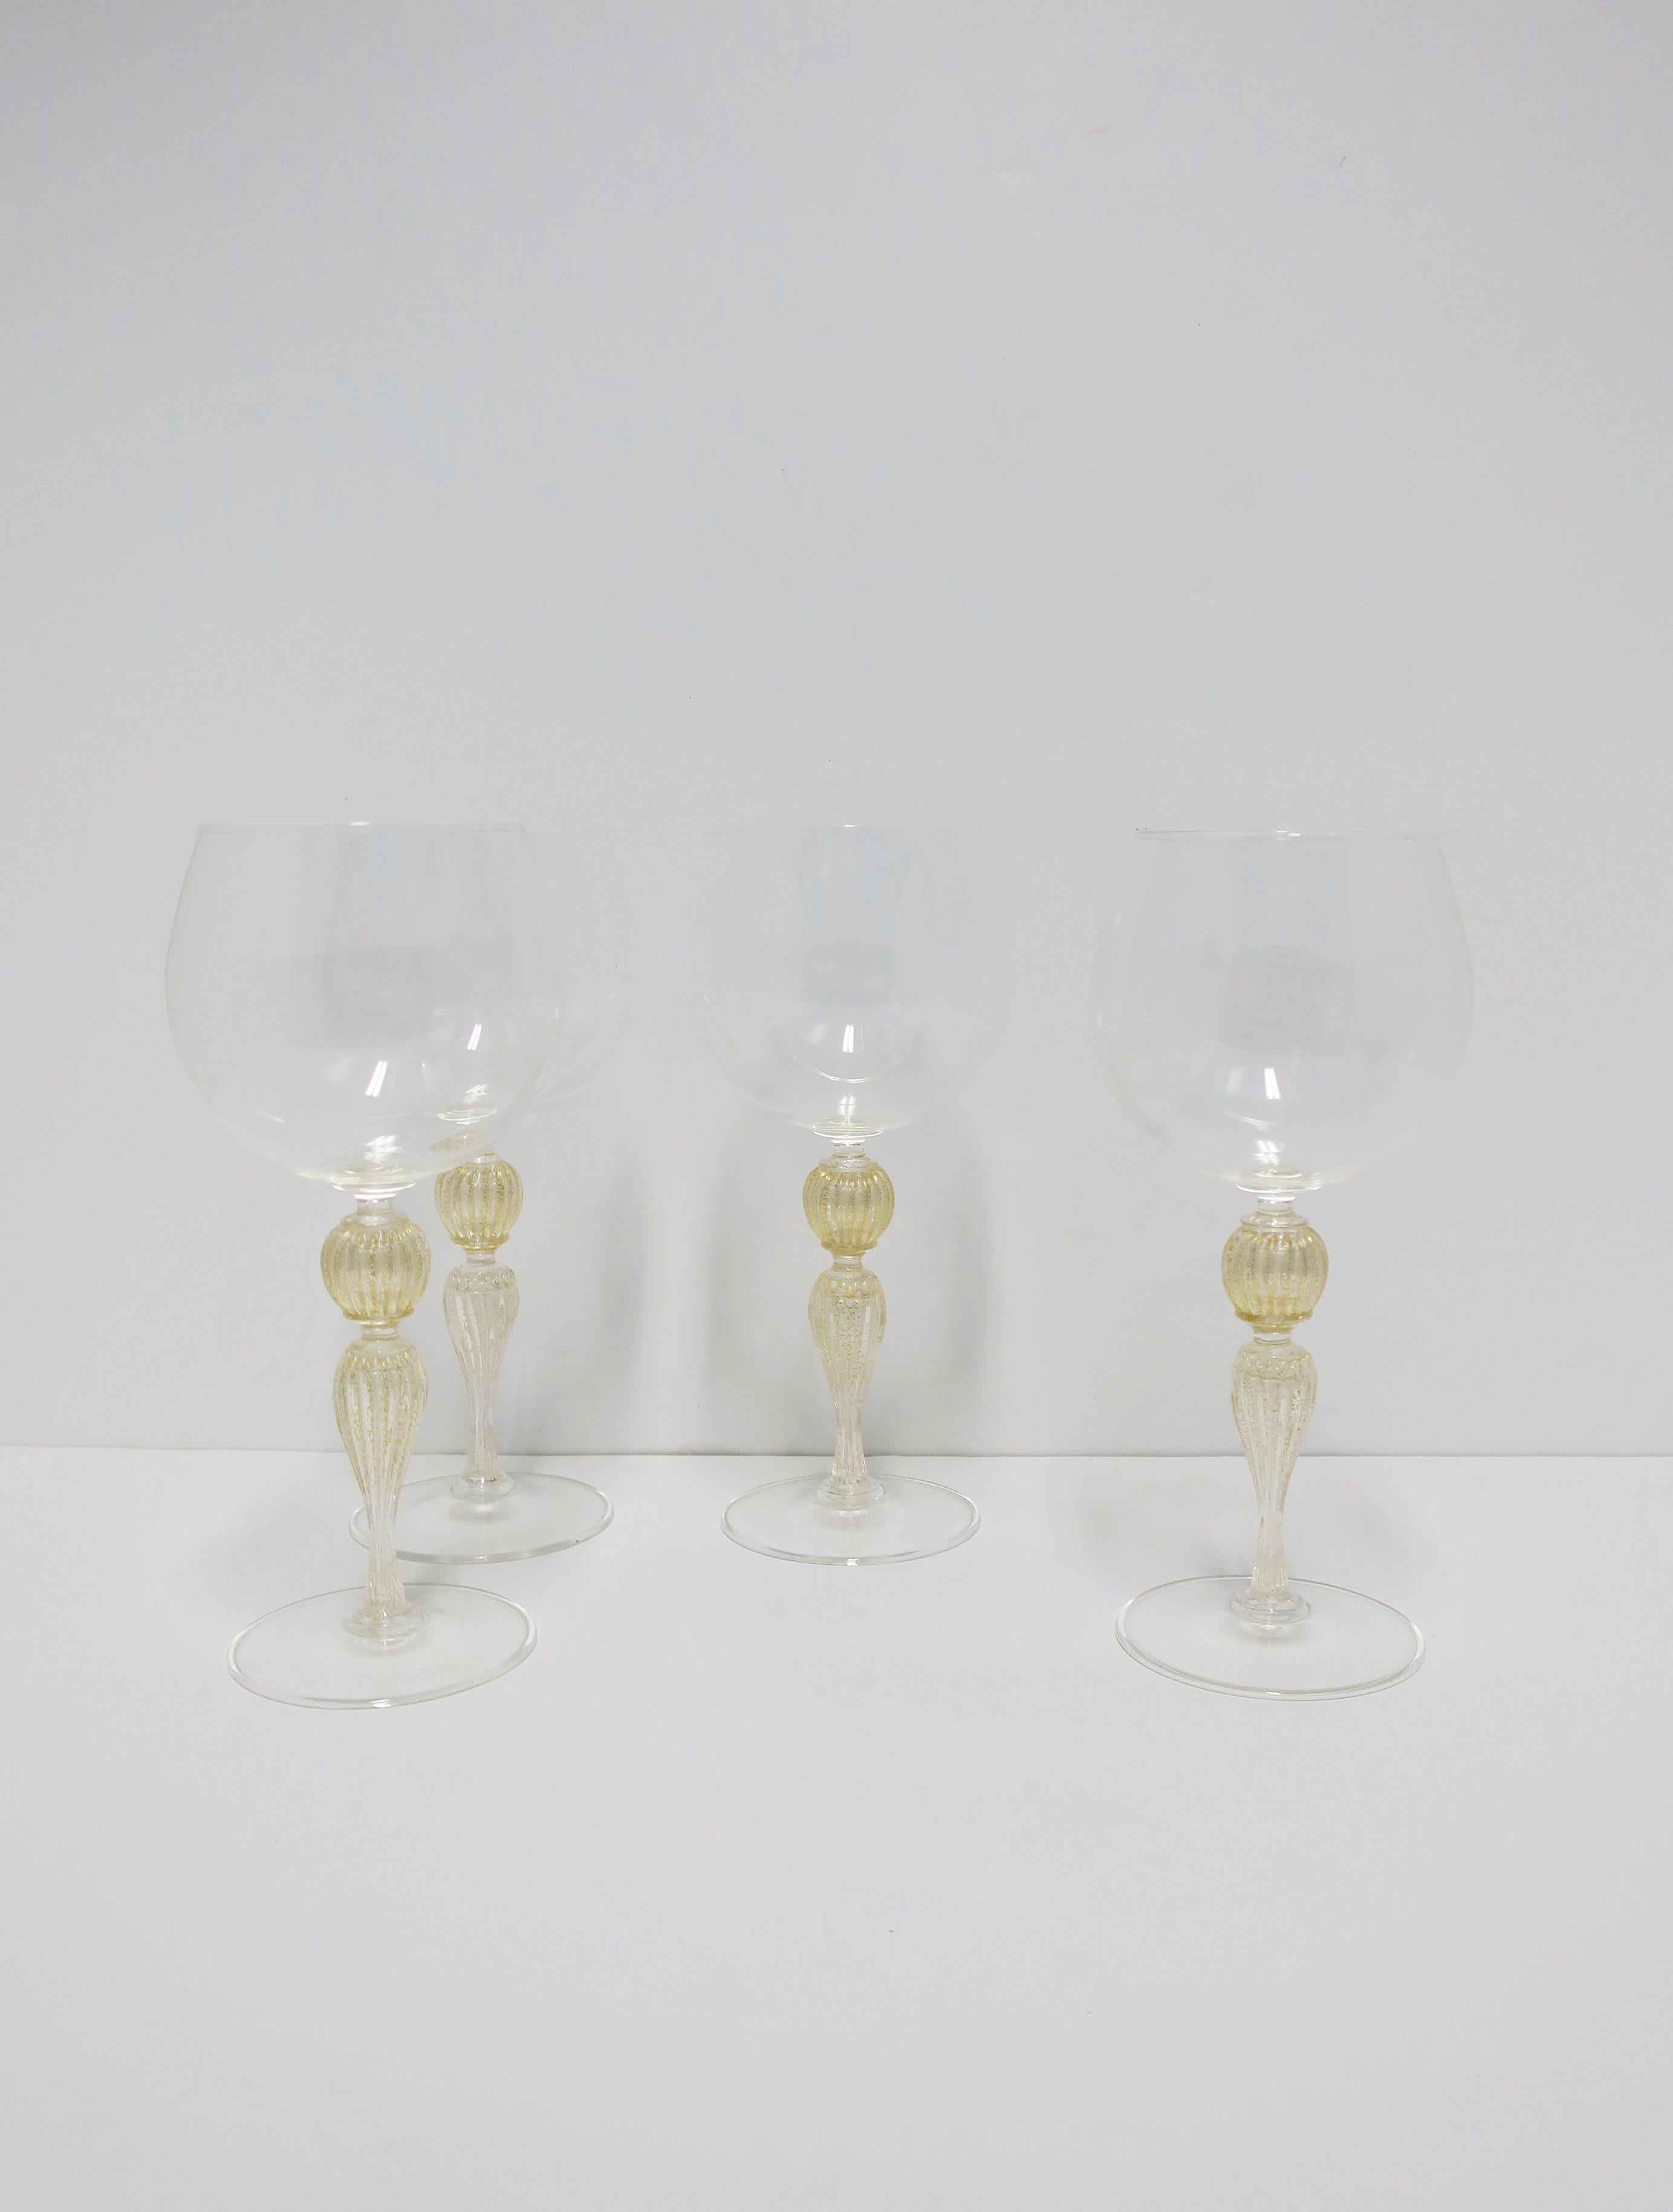 Art Glass Italian Gold Venetian Murano Wine Goblet Glasses, Set of 4